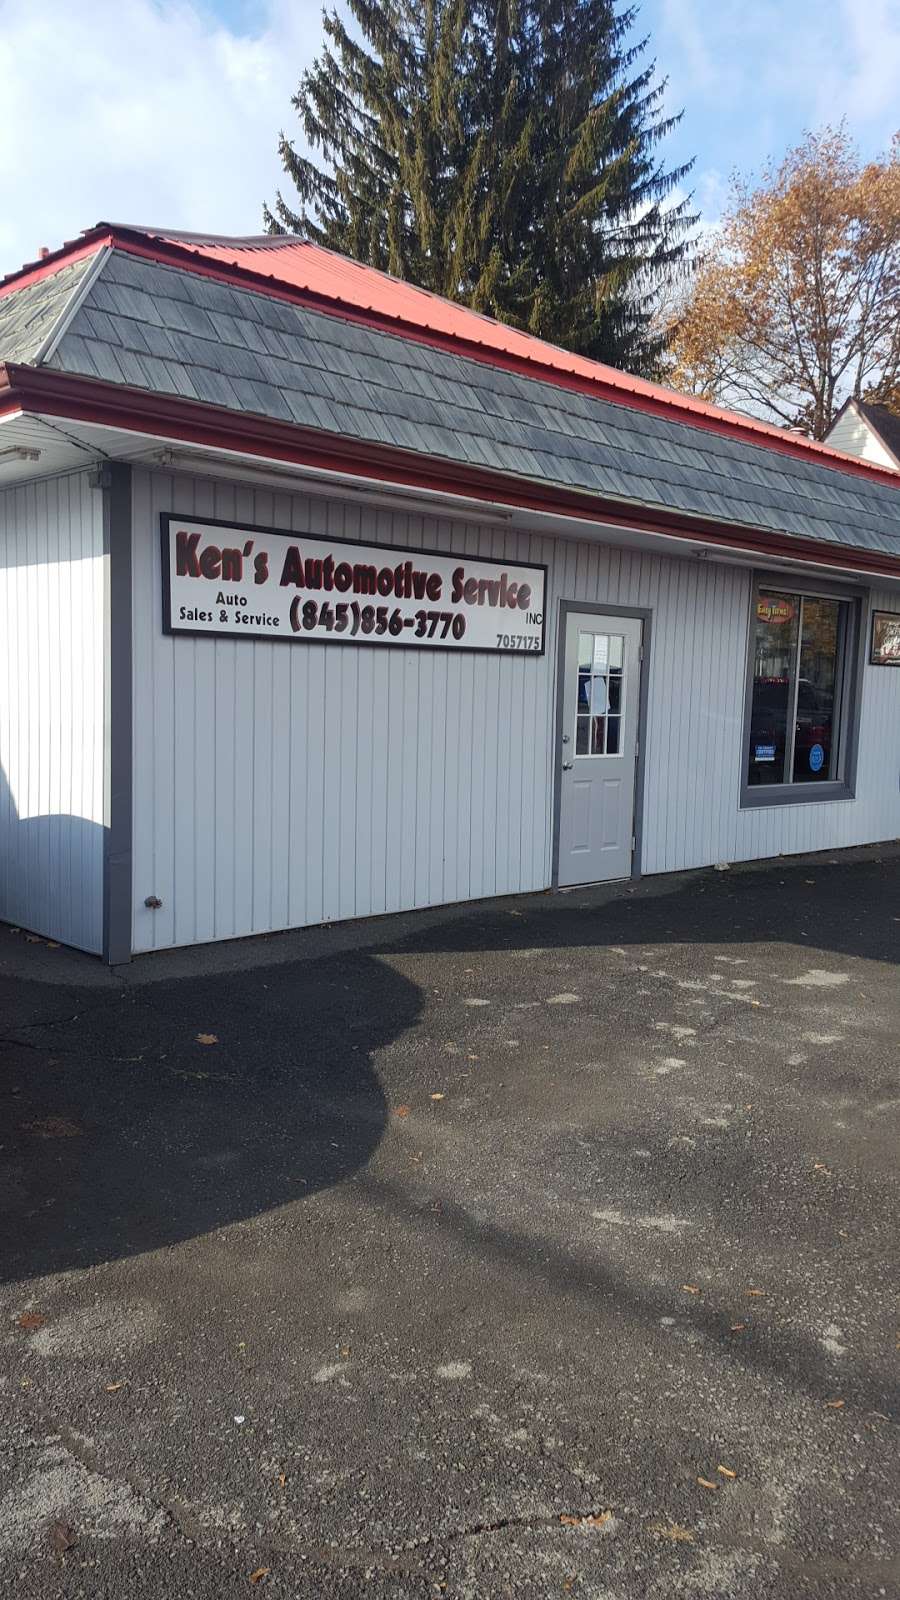 Kens Automotive Inc. | 20 W Main St, Port Jervis, NY 12771, USA | Phone: (845) 856-3770